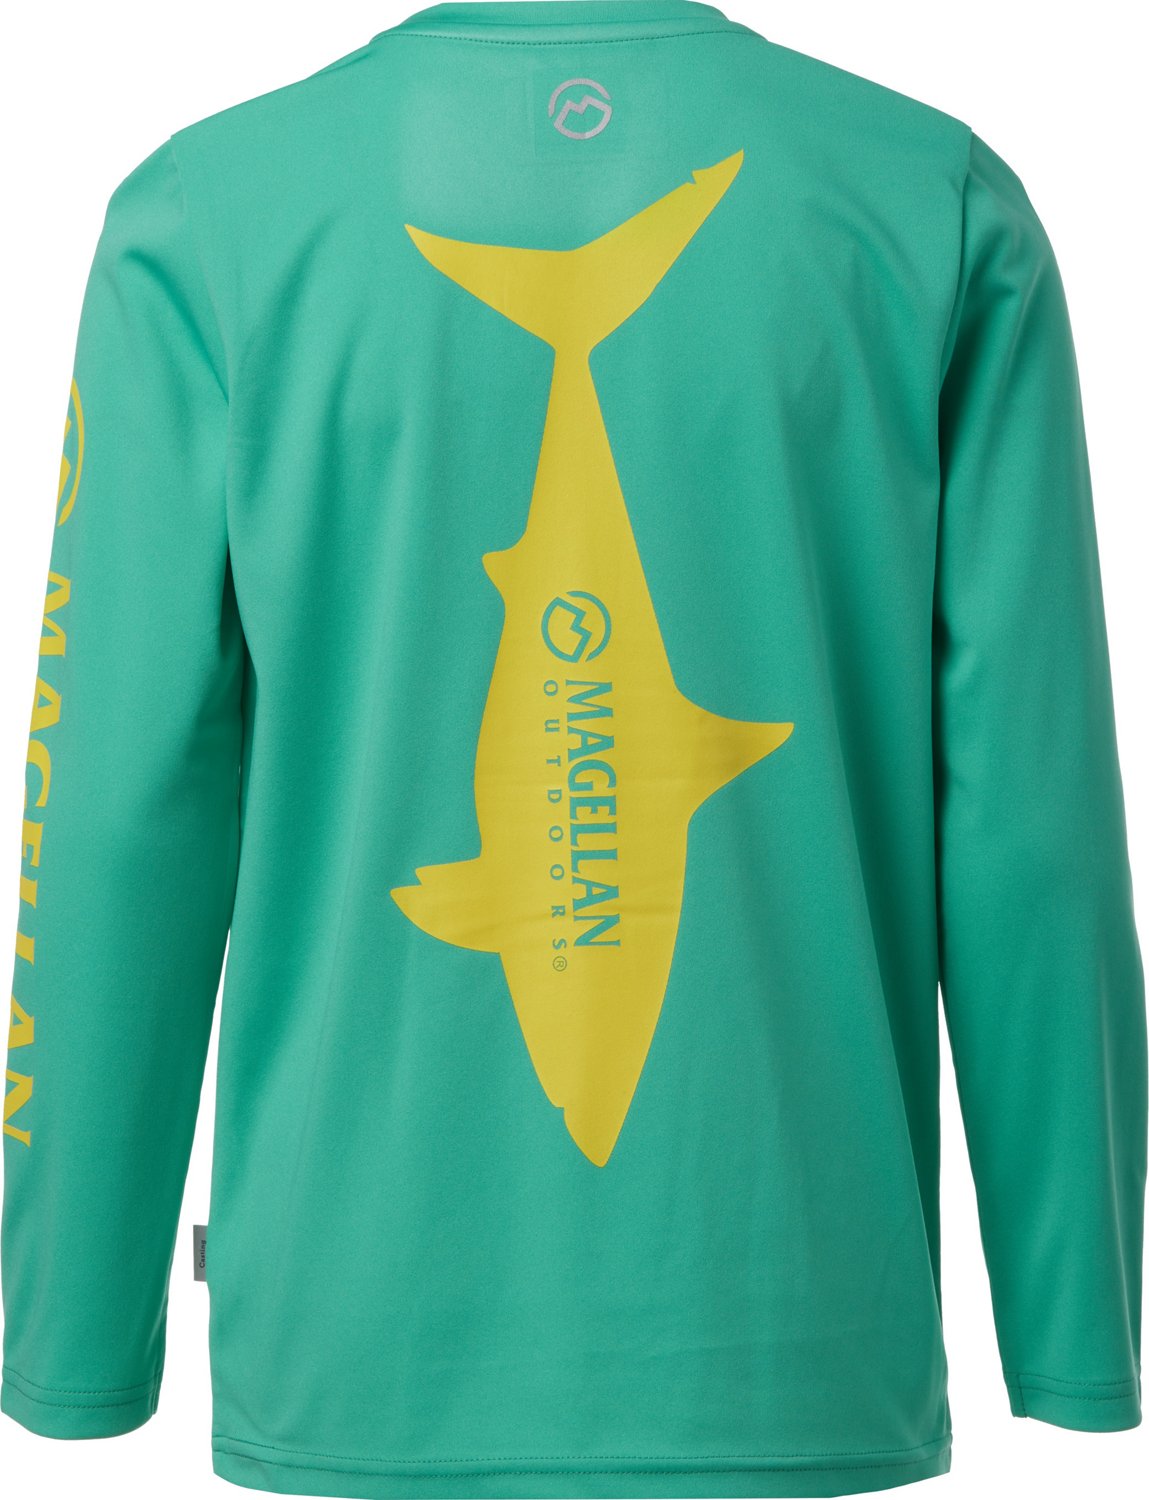 Magellan fish gear shirt  Fishing shirts, Shirts, Outdoor shirt